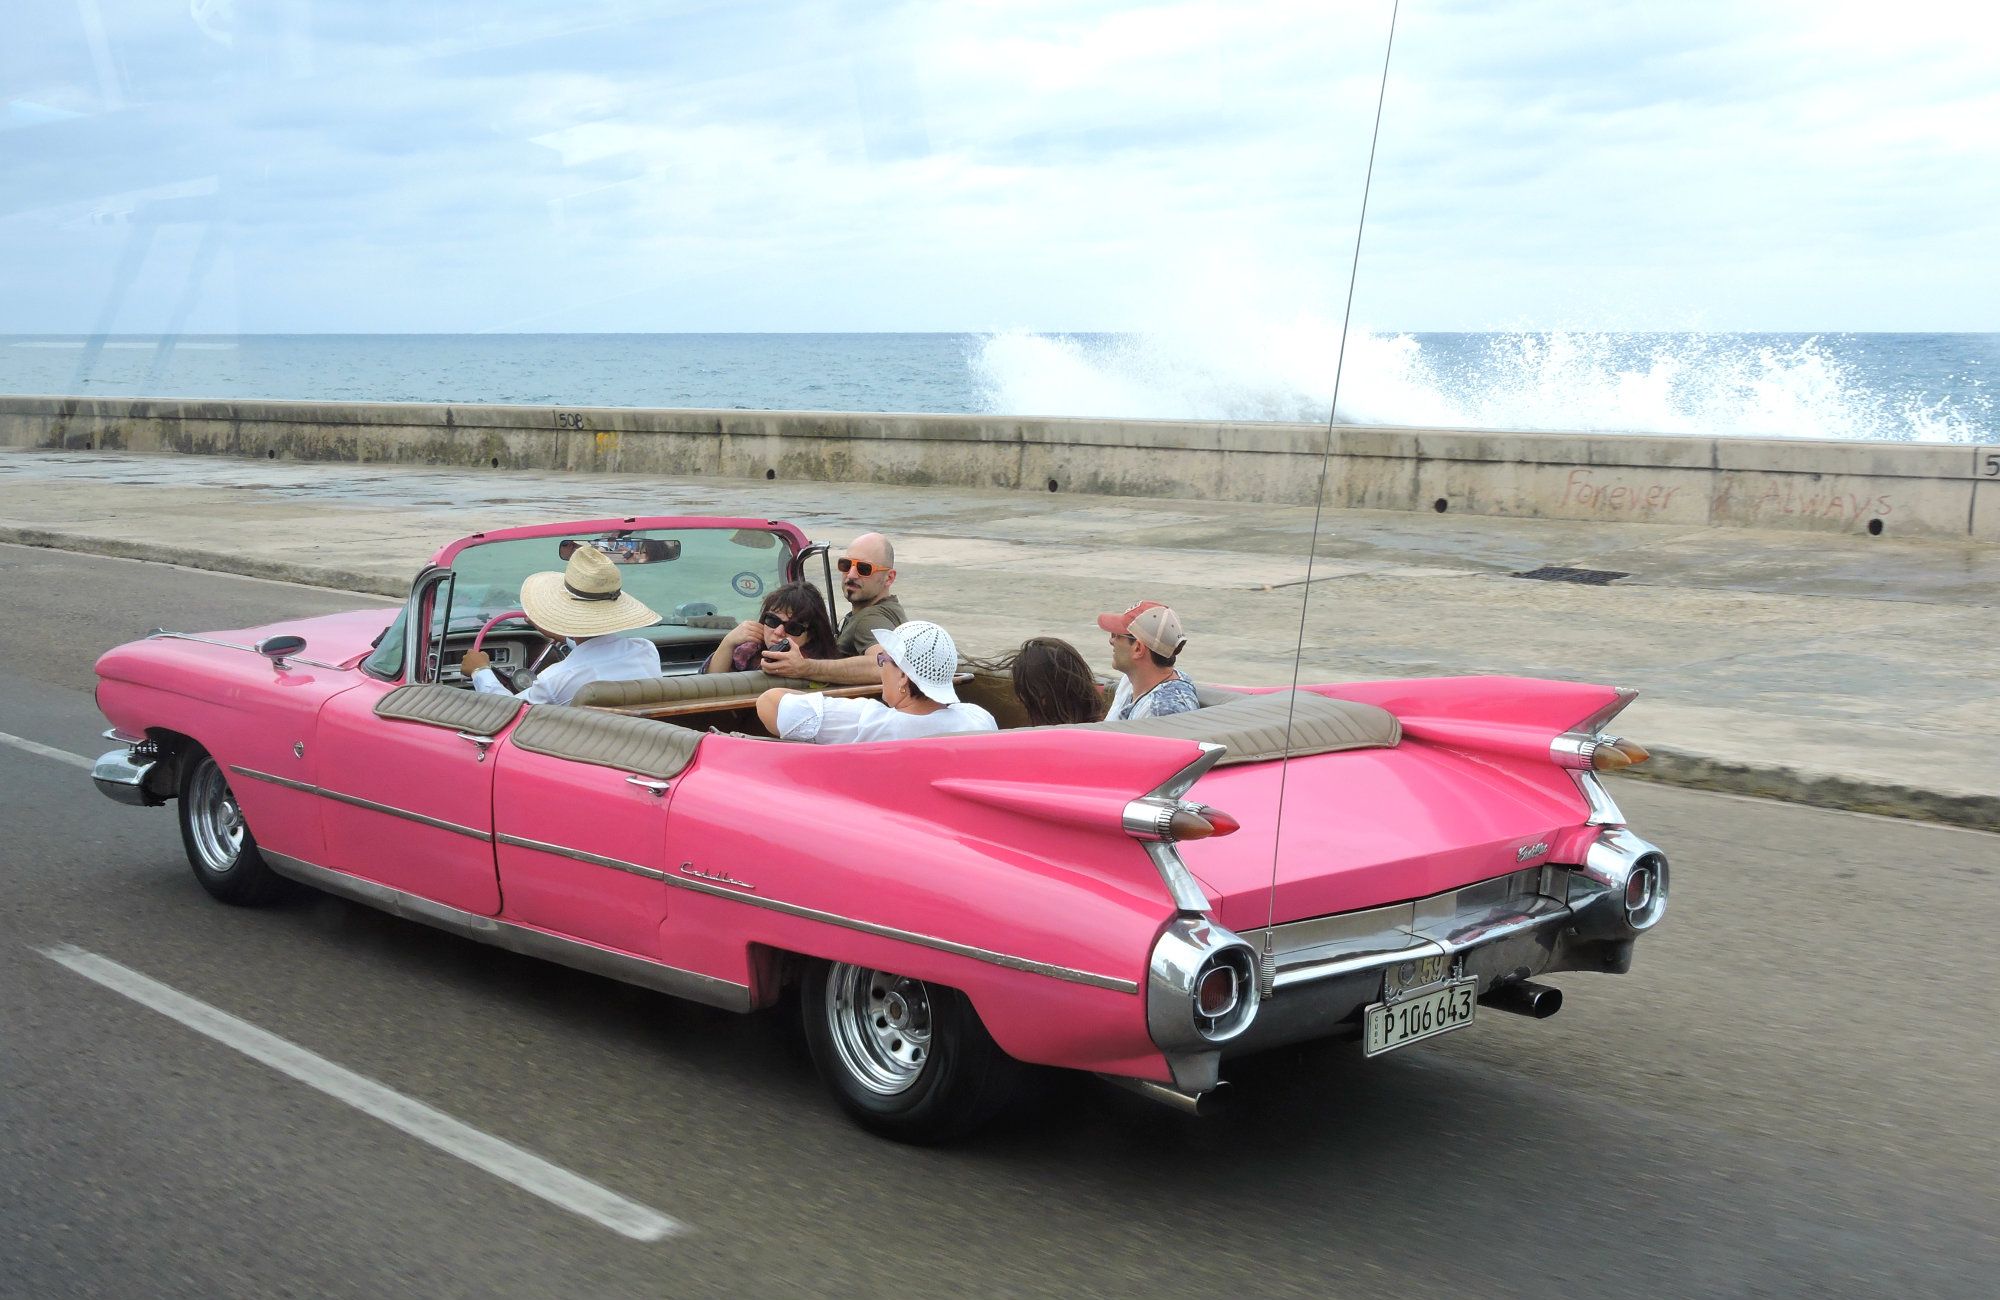 Varadero Taxi, Cuba Taxi, Melia Marina Varadero Food, Melia Marina Varadero, Varadero Beach, Cuba, Things to know trip to Cuba